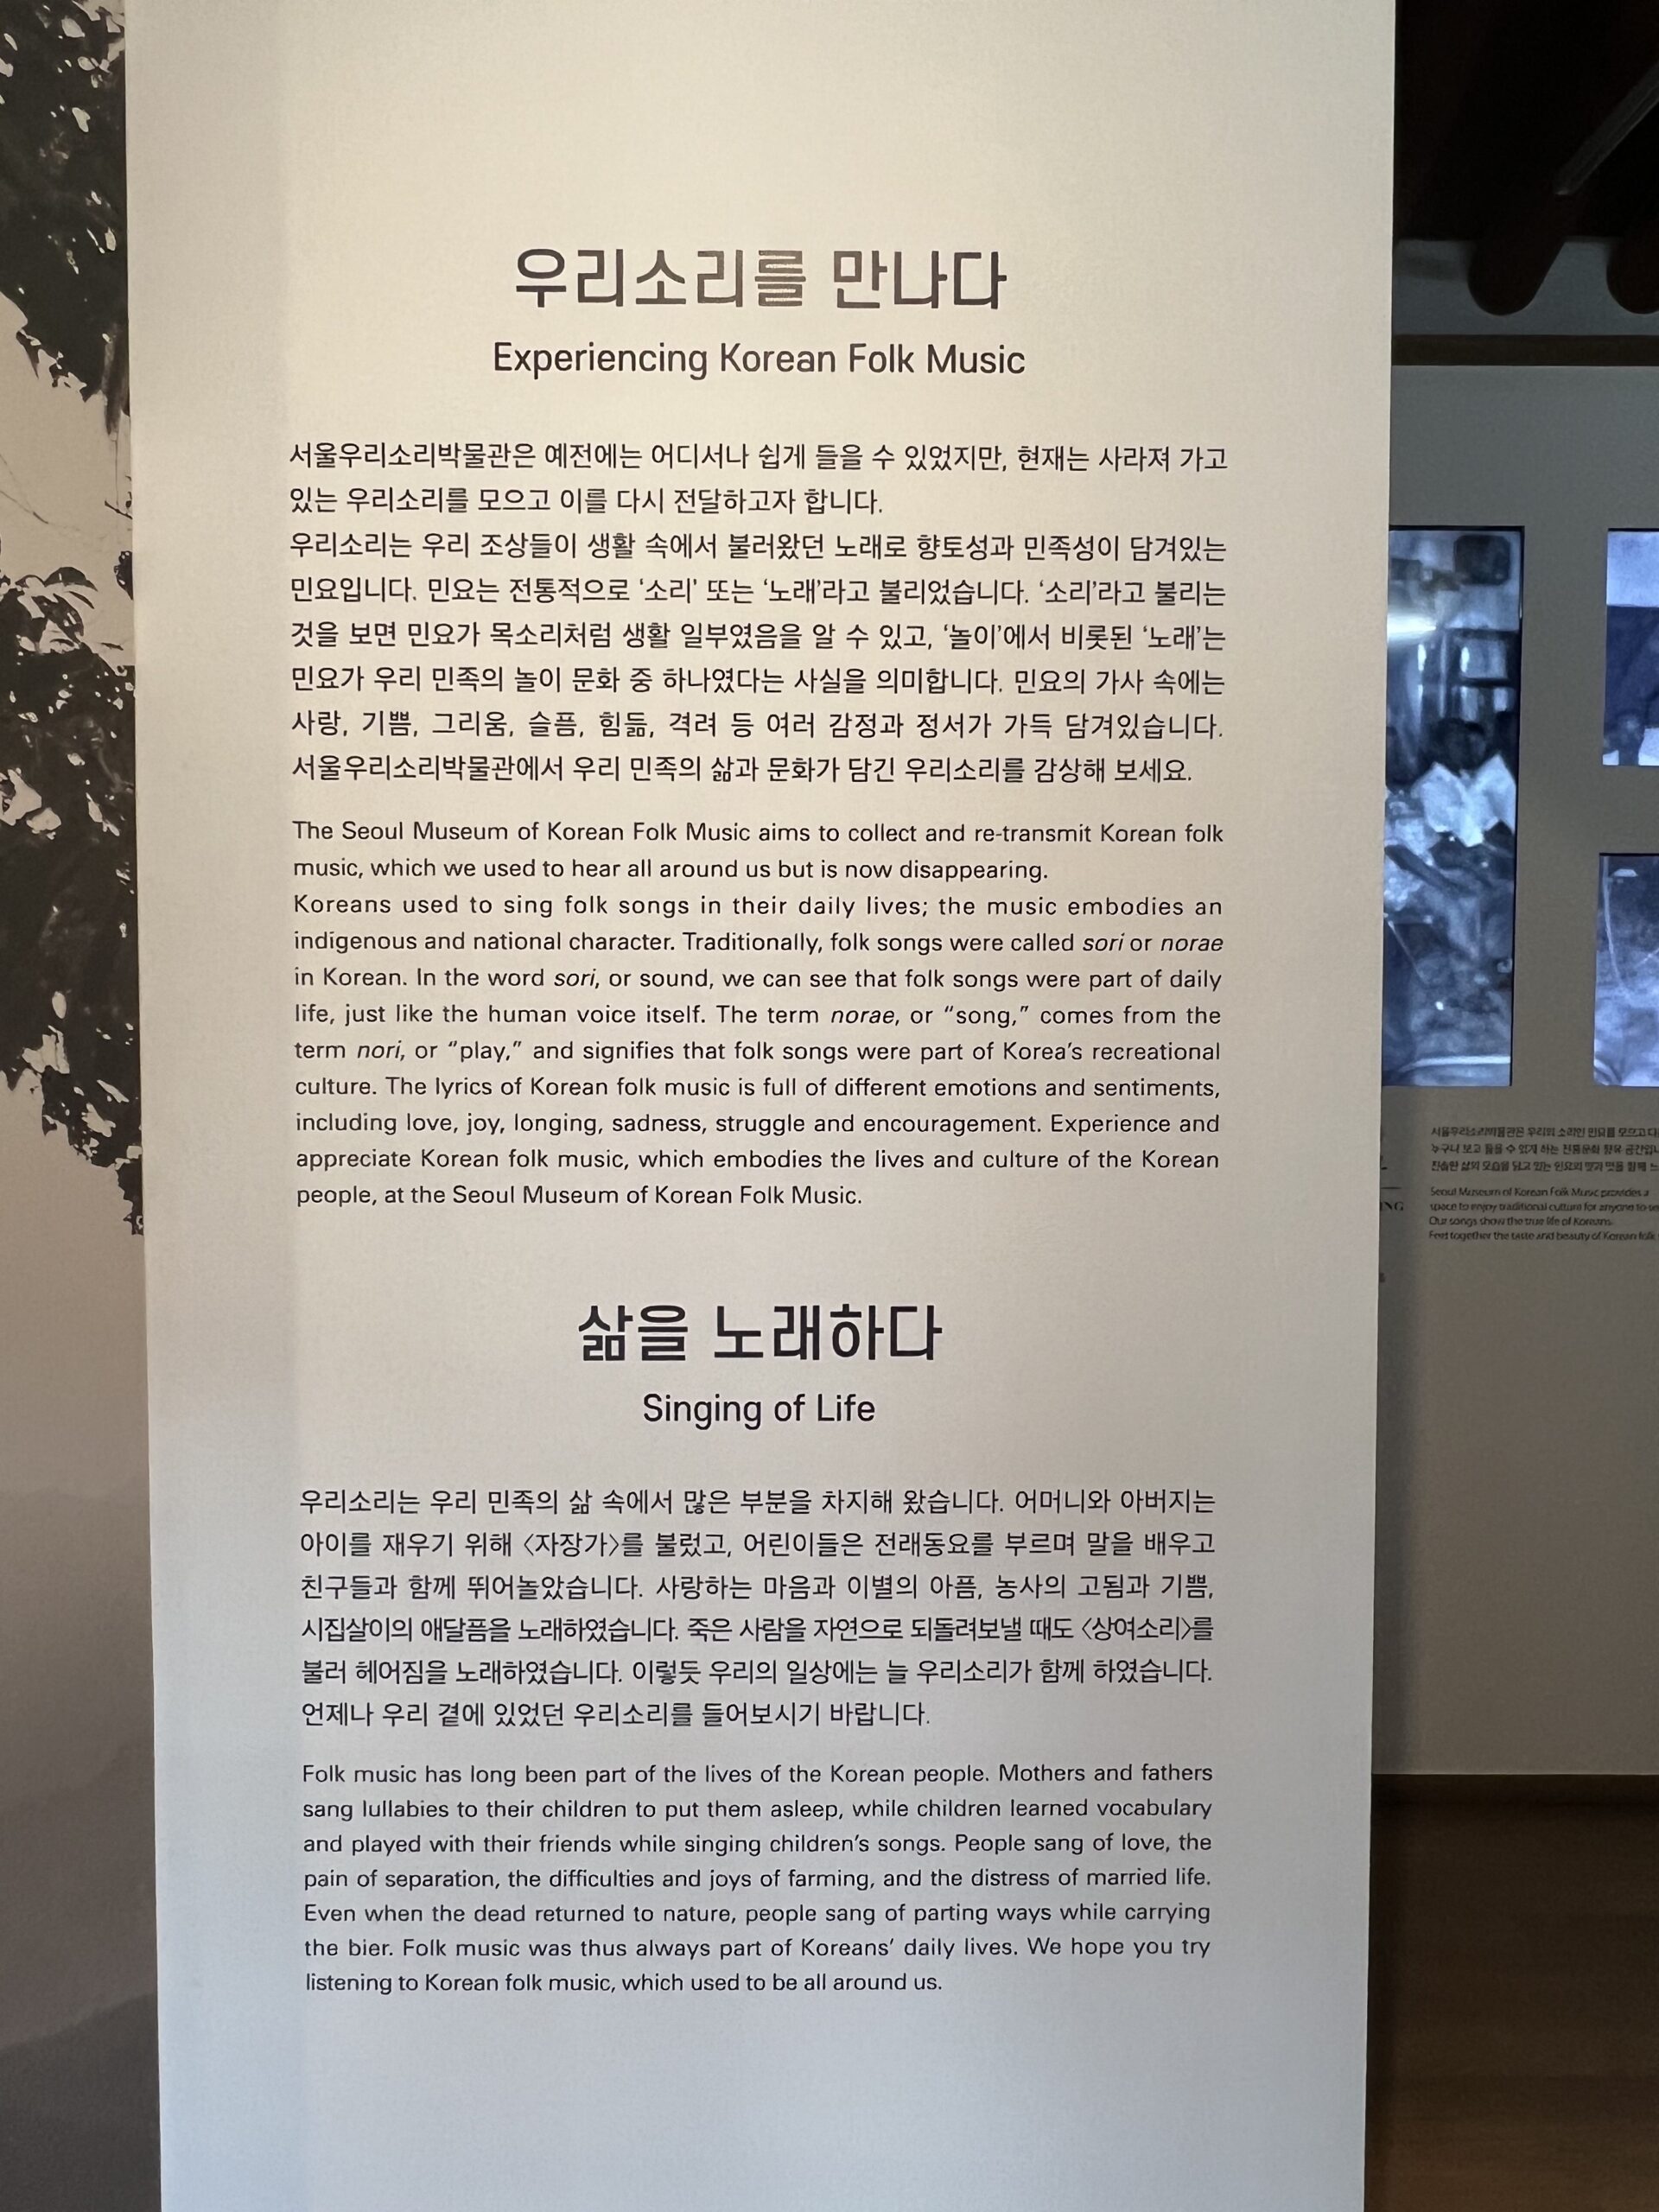 Week 15 – Exploring Korean History